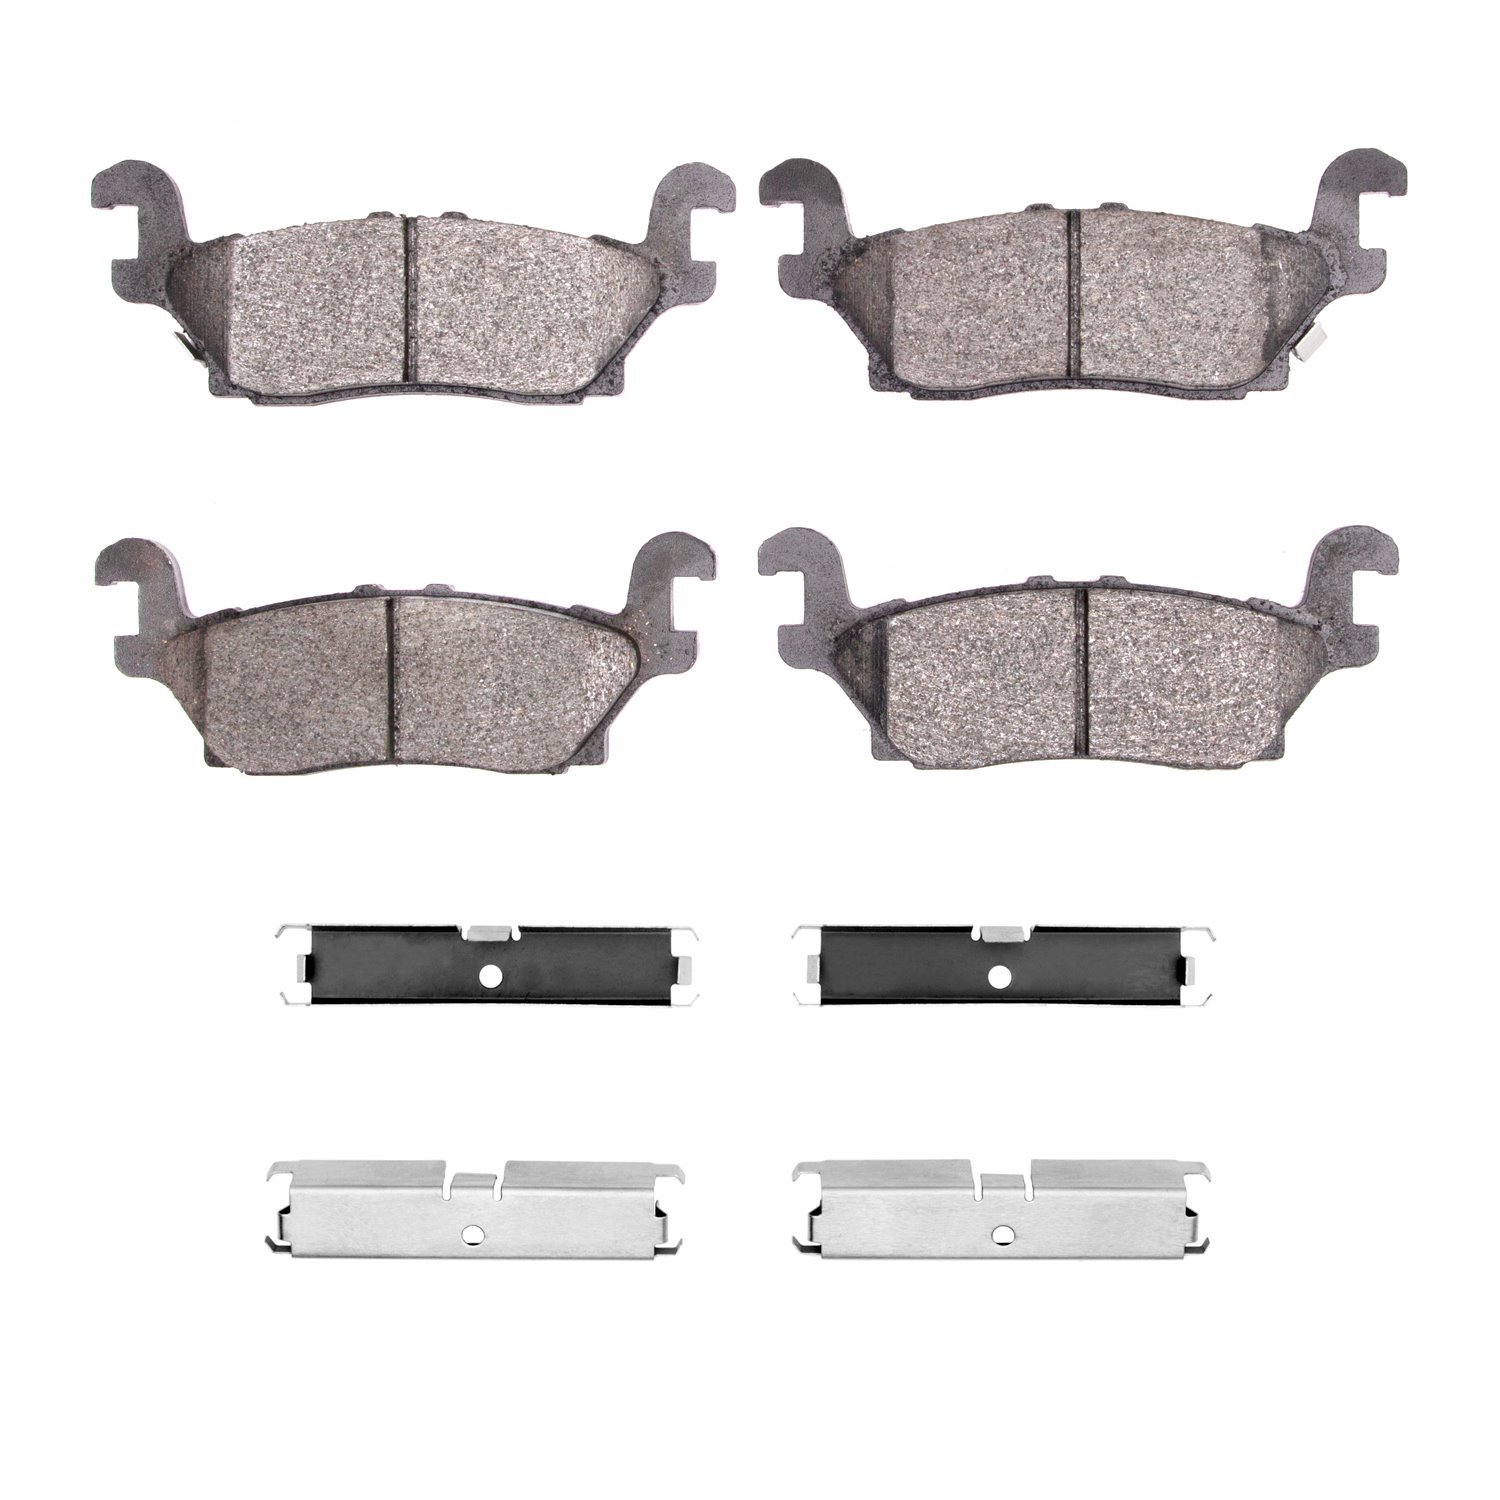 1310-1120-01 3000-Series Ceramic Brake Pads & Hardware Kit, 2006-2010 GM, Position: Rear